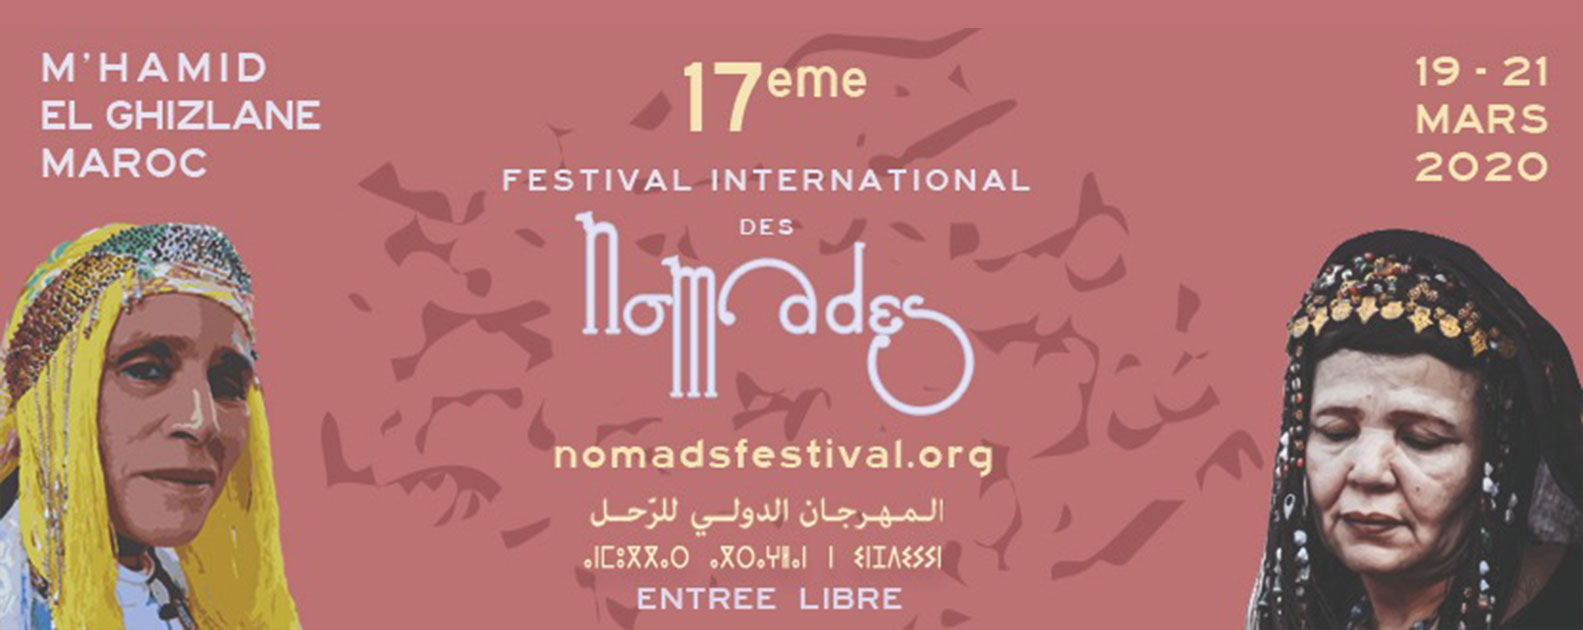 O Festival Internacional dos Nómadas 